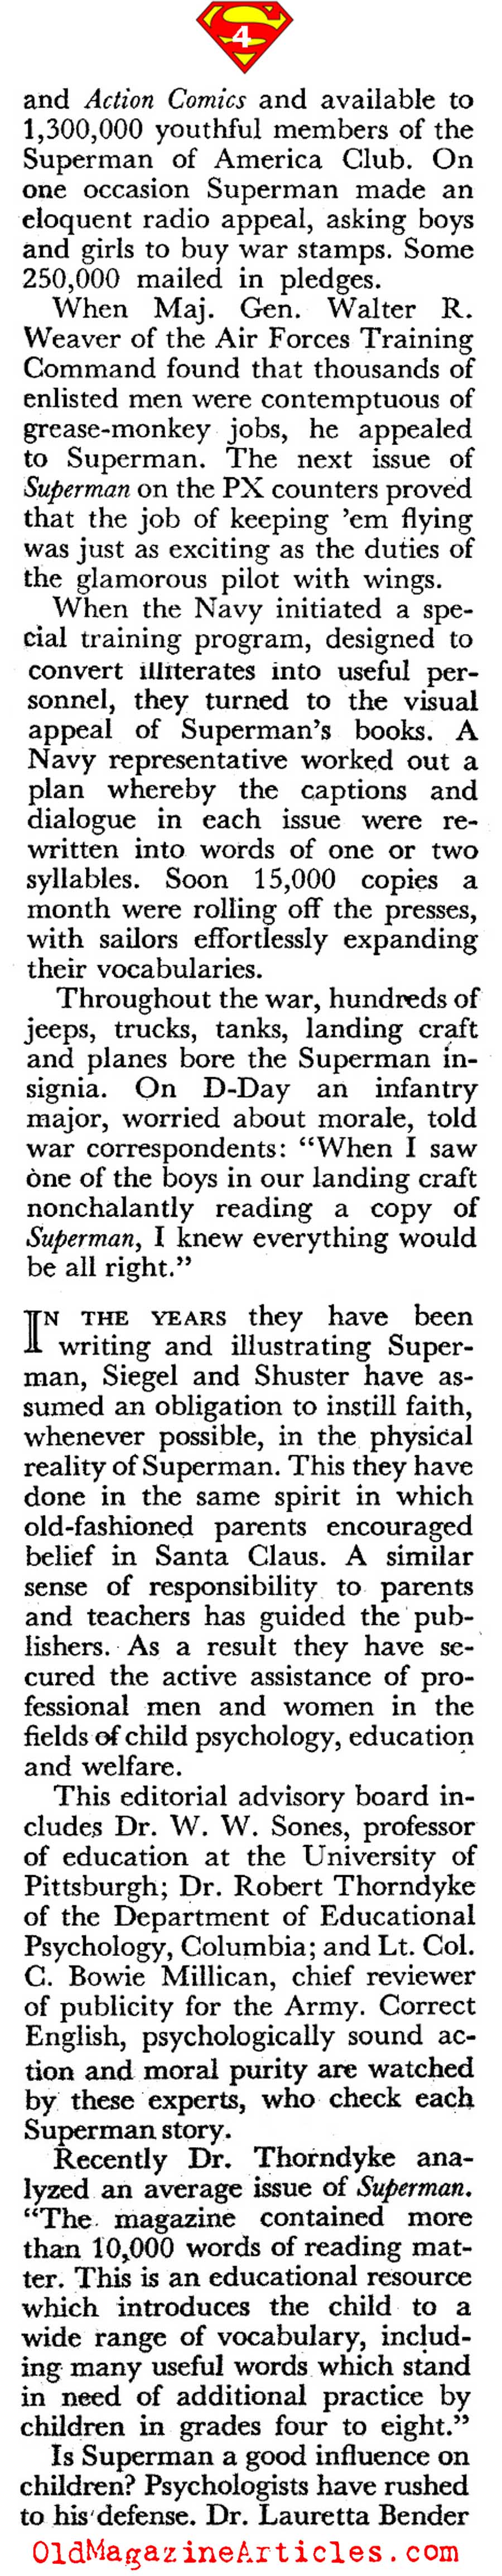 It's Superman! (Coronet Magazine, 1946)